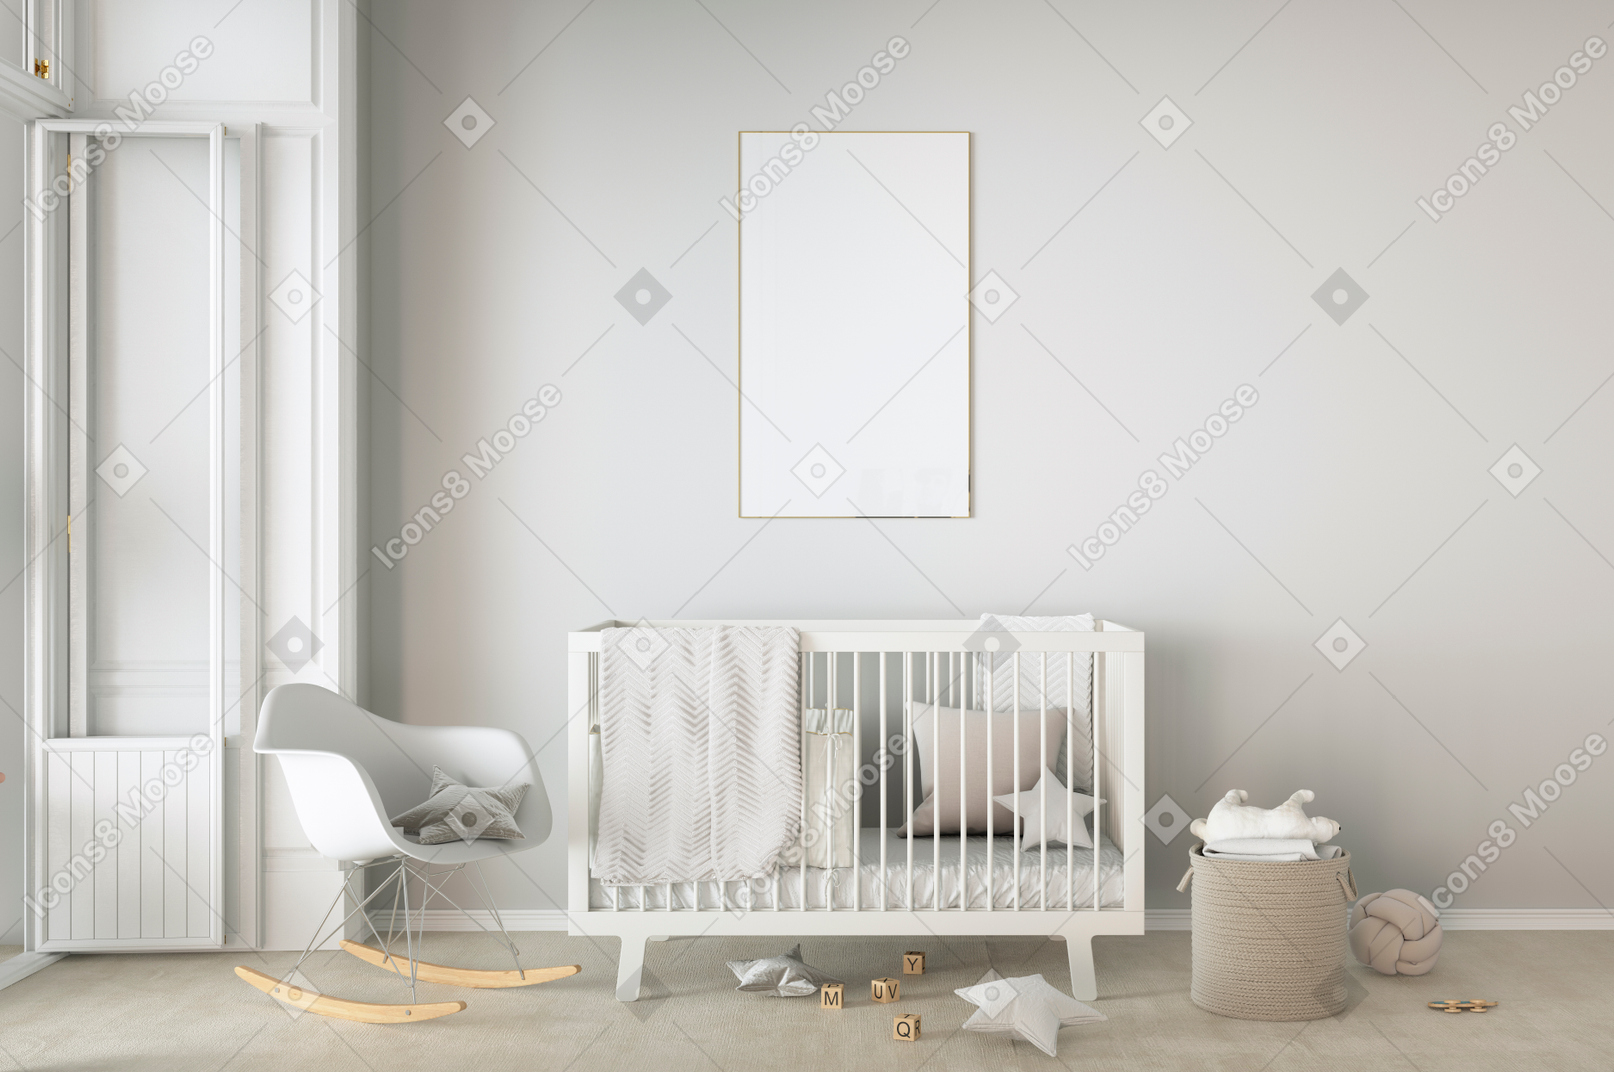 Kinderzimmer mit kinderbett und schaukelstuhl